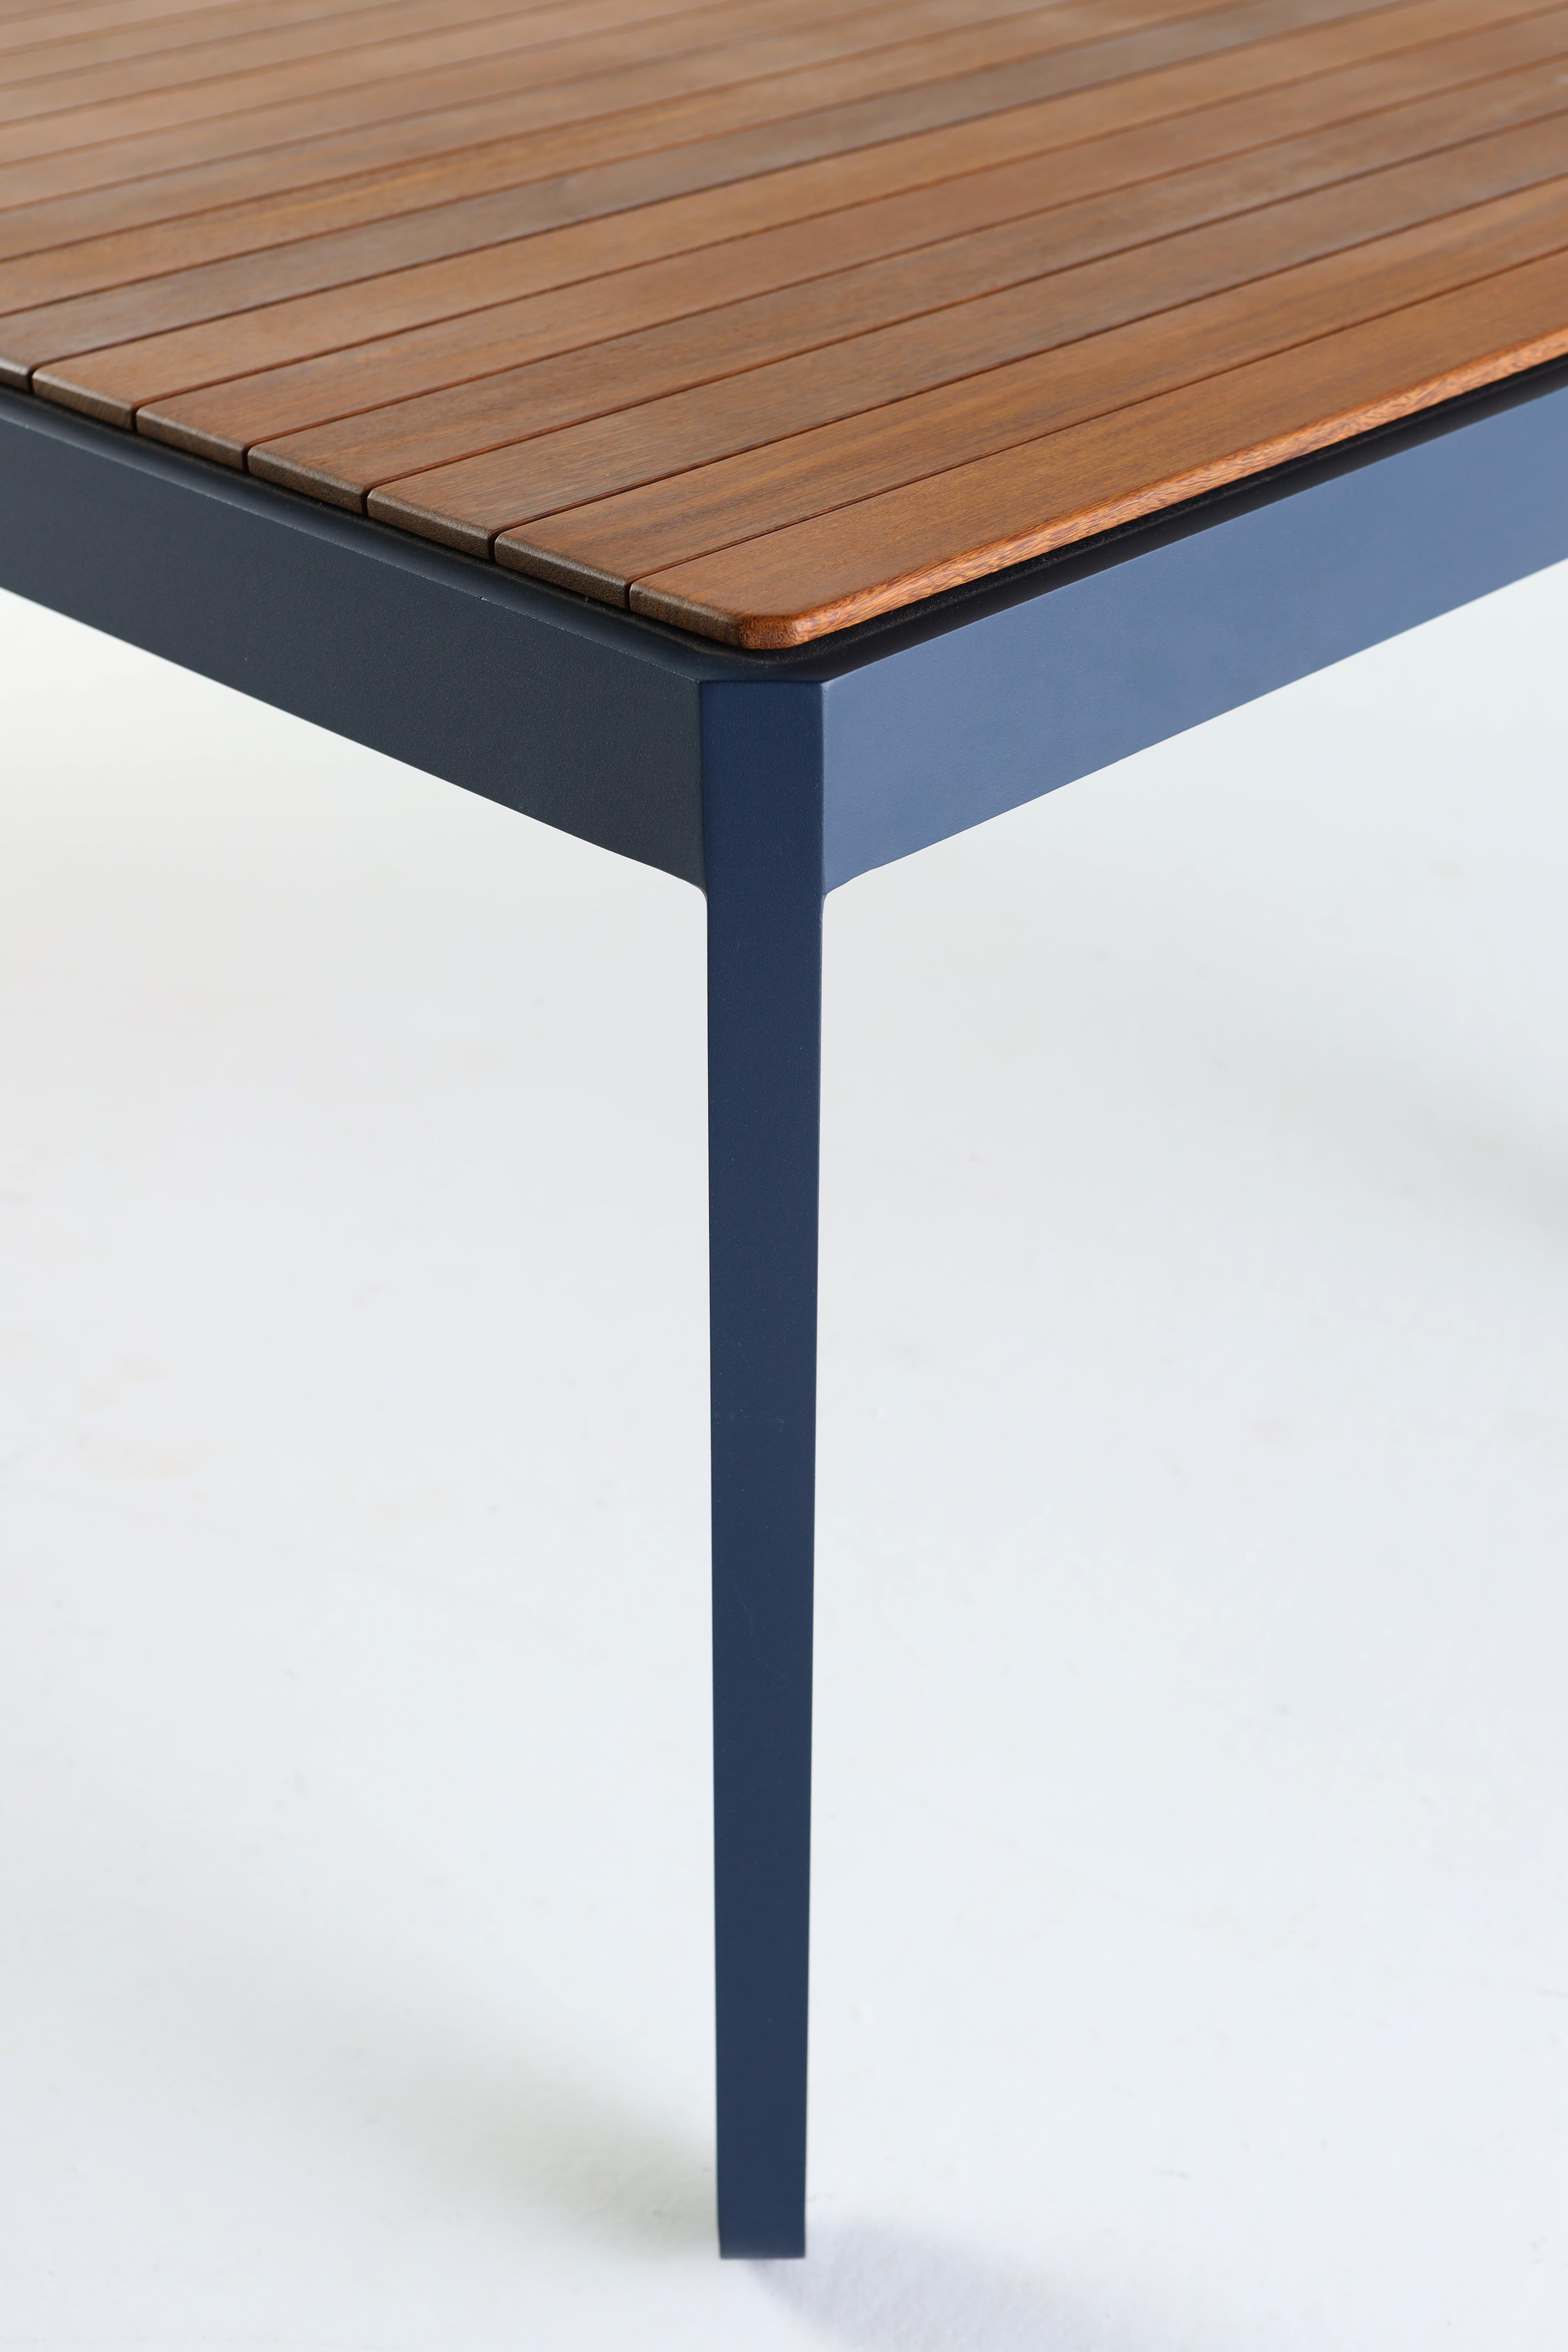 dining table wood top metal legs